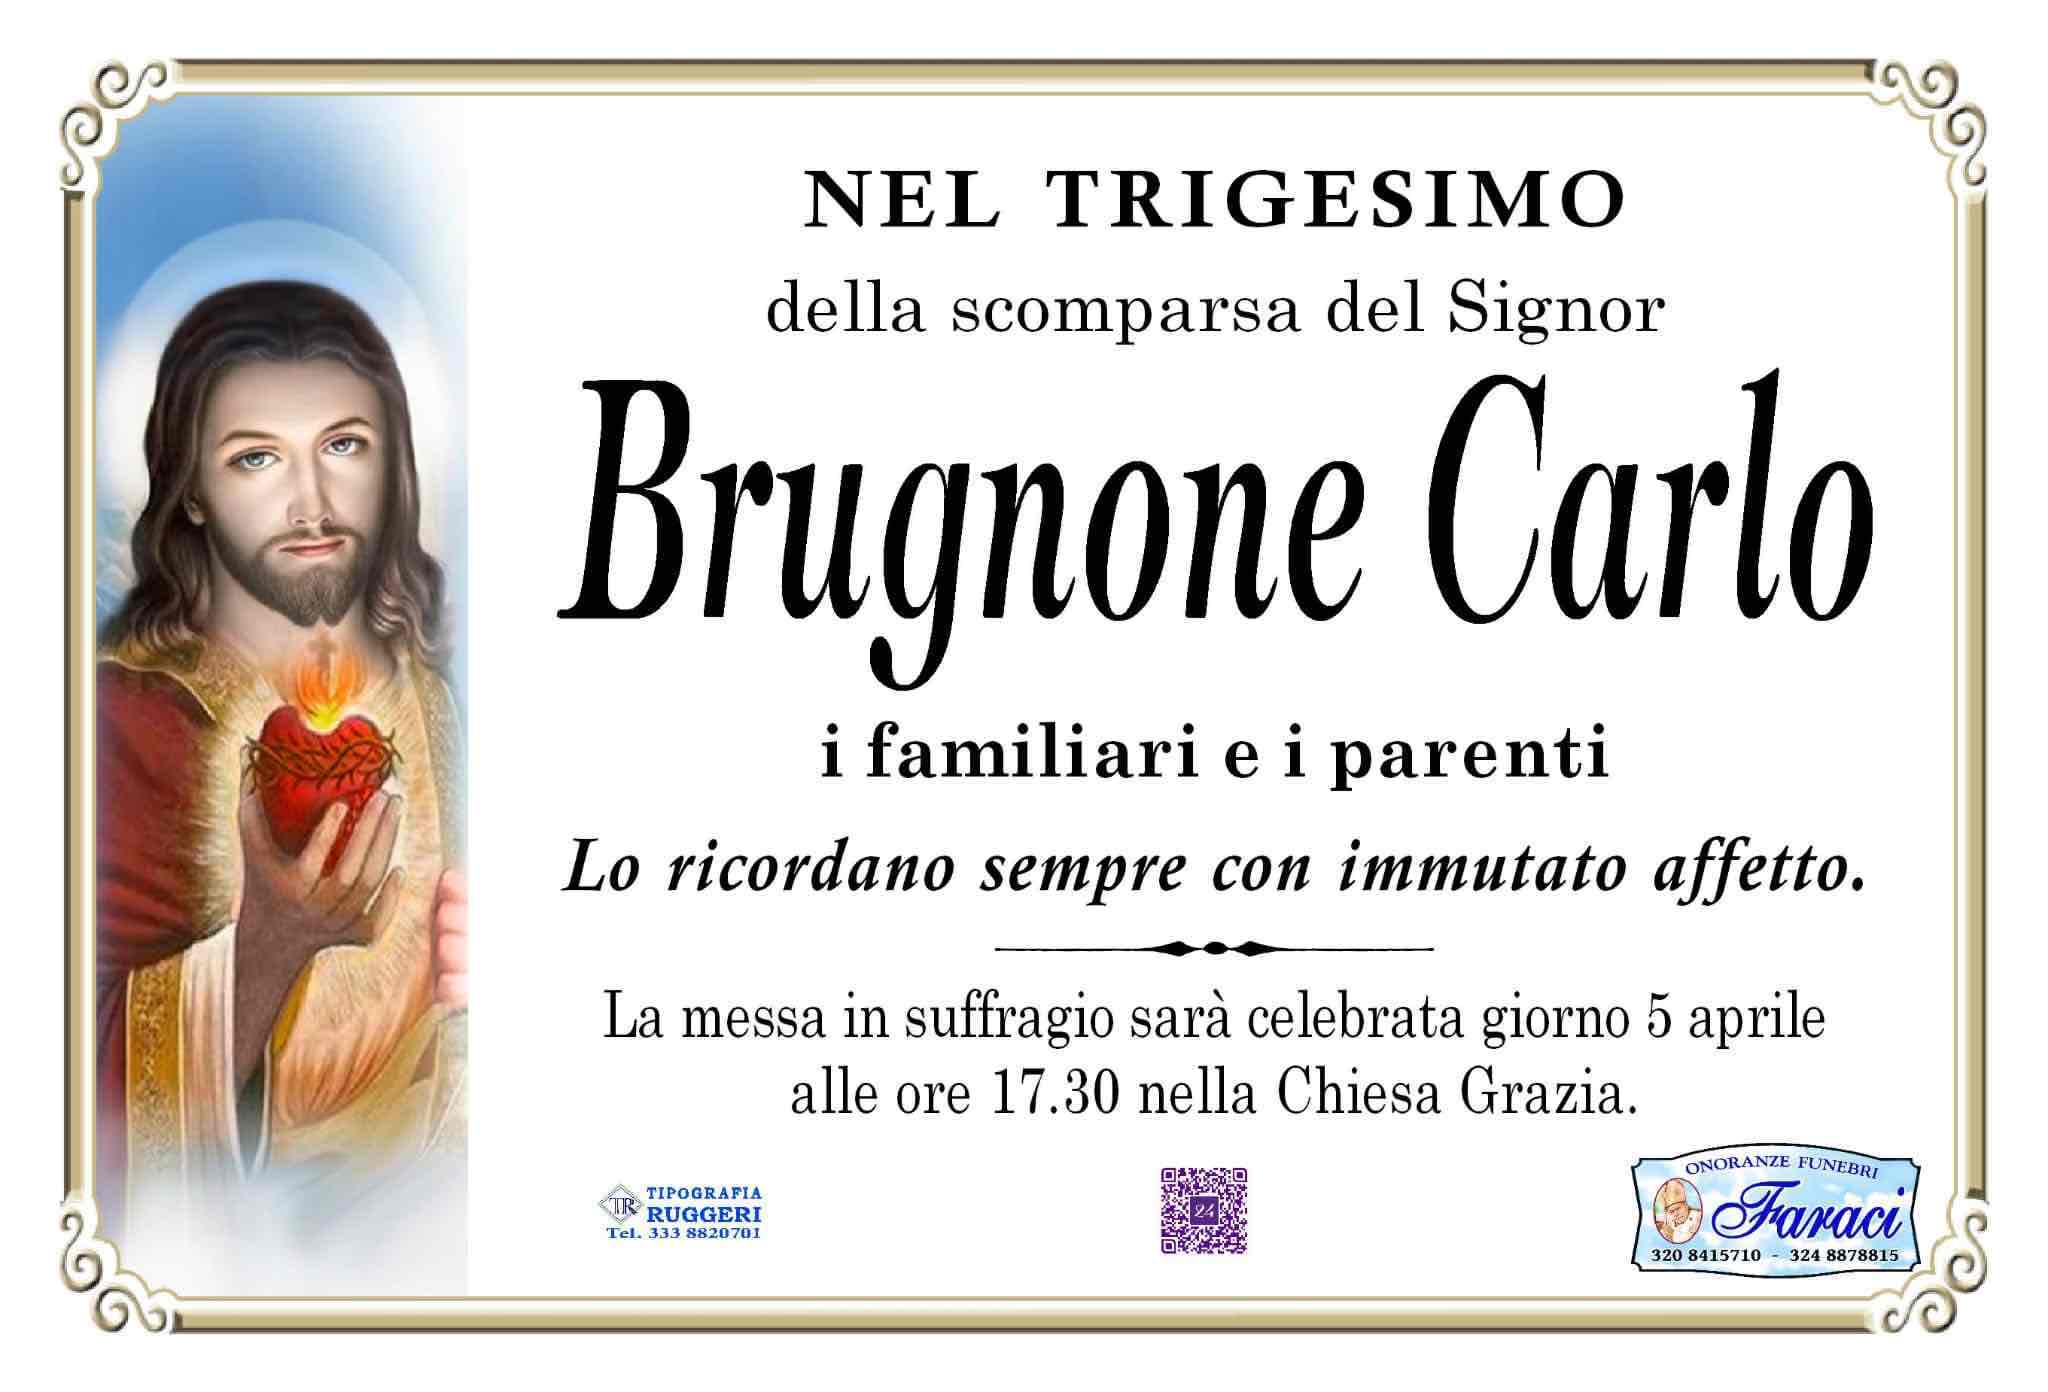 Carlo Brugnone